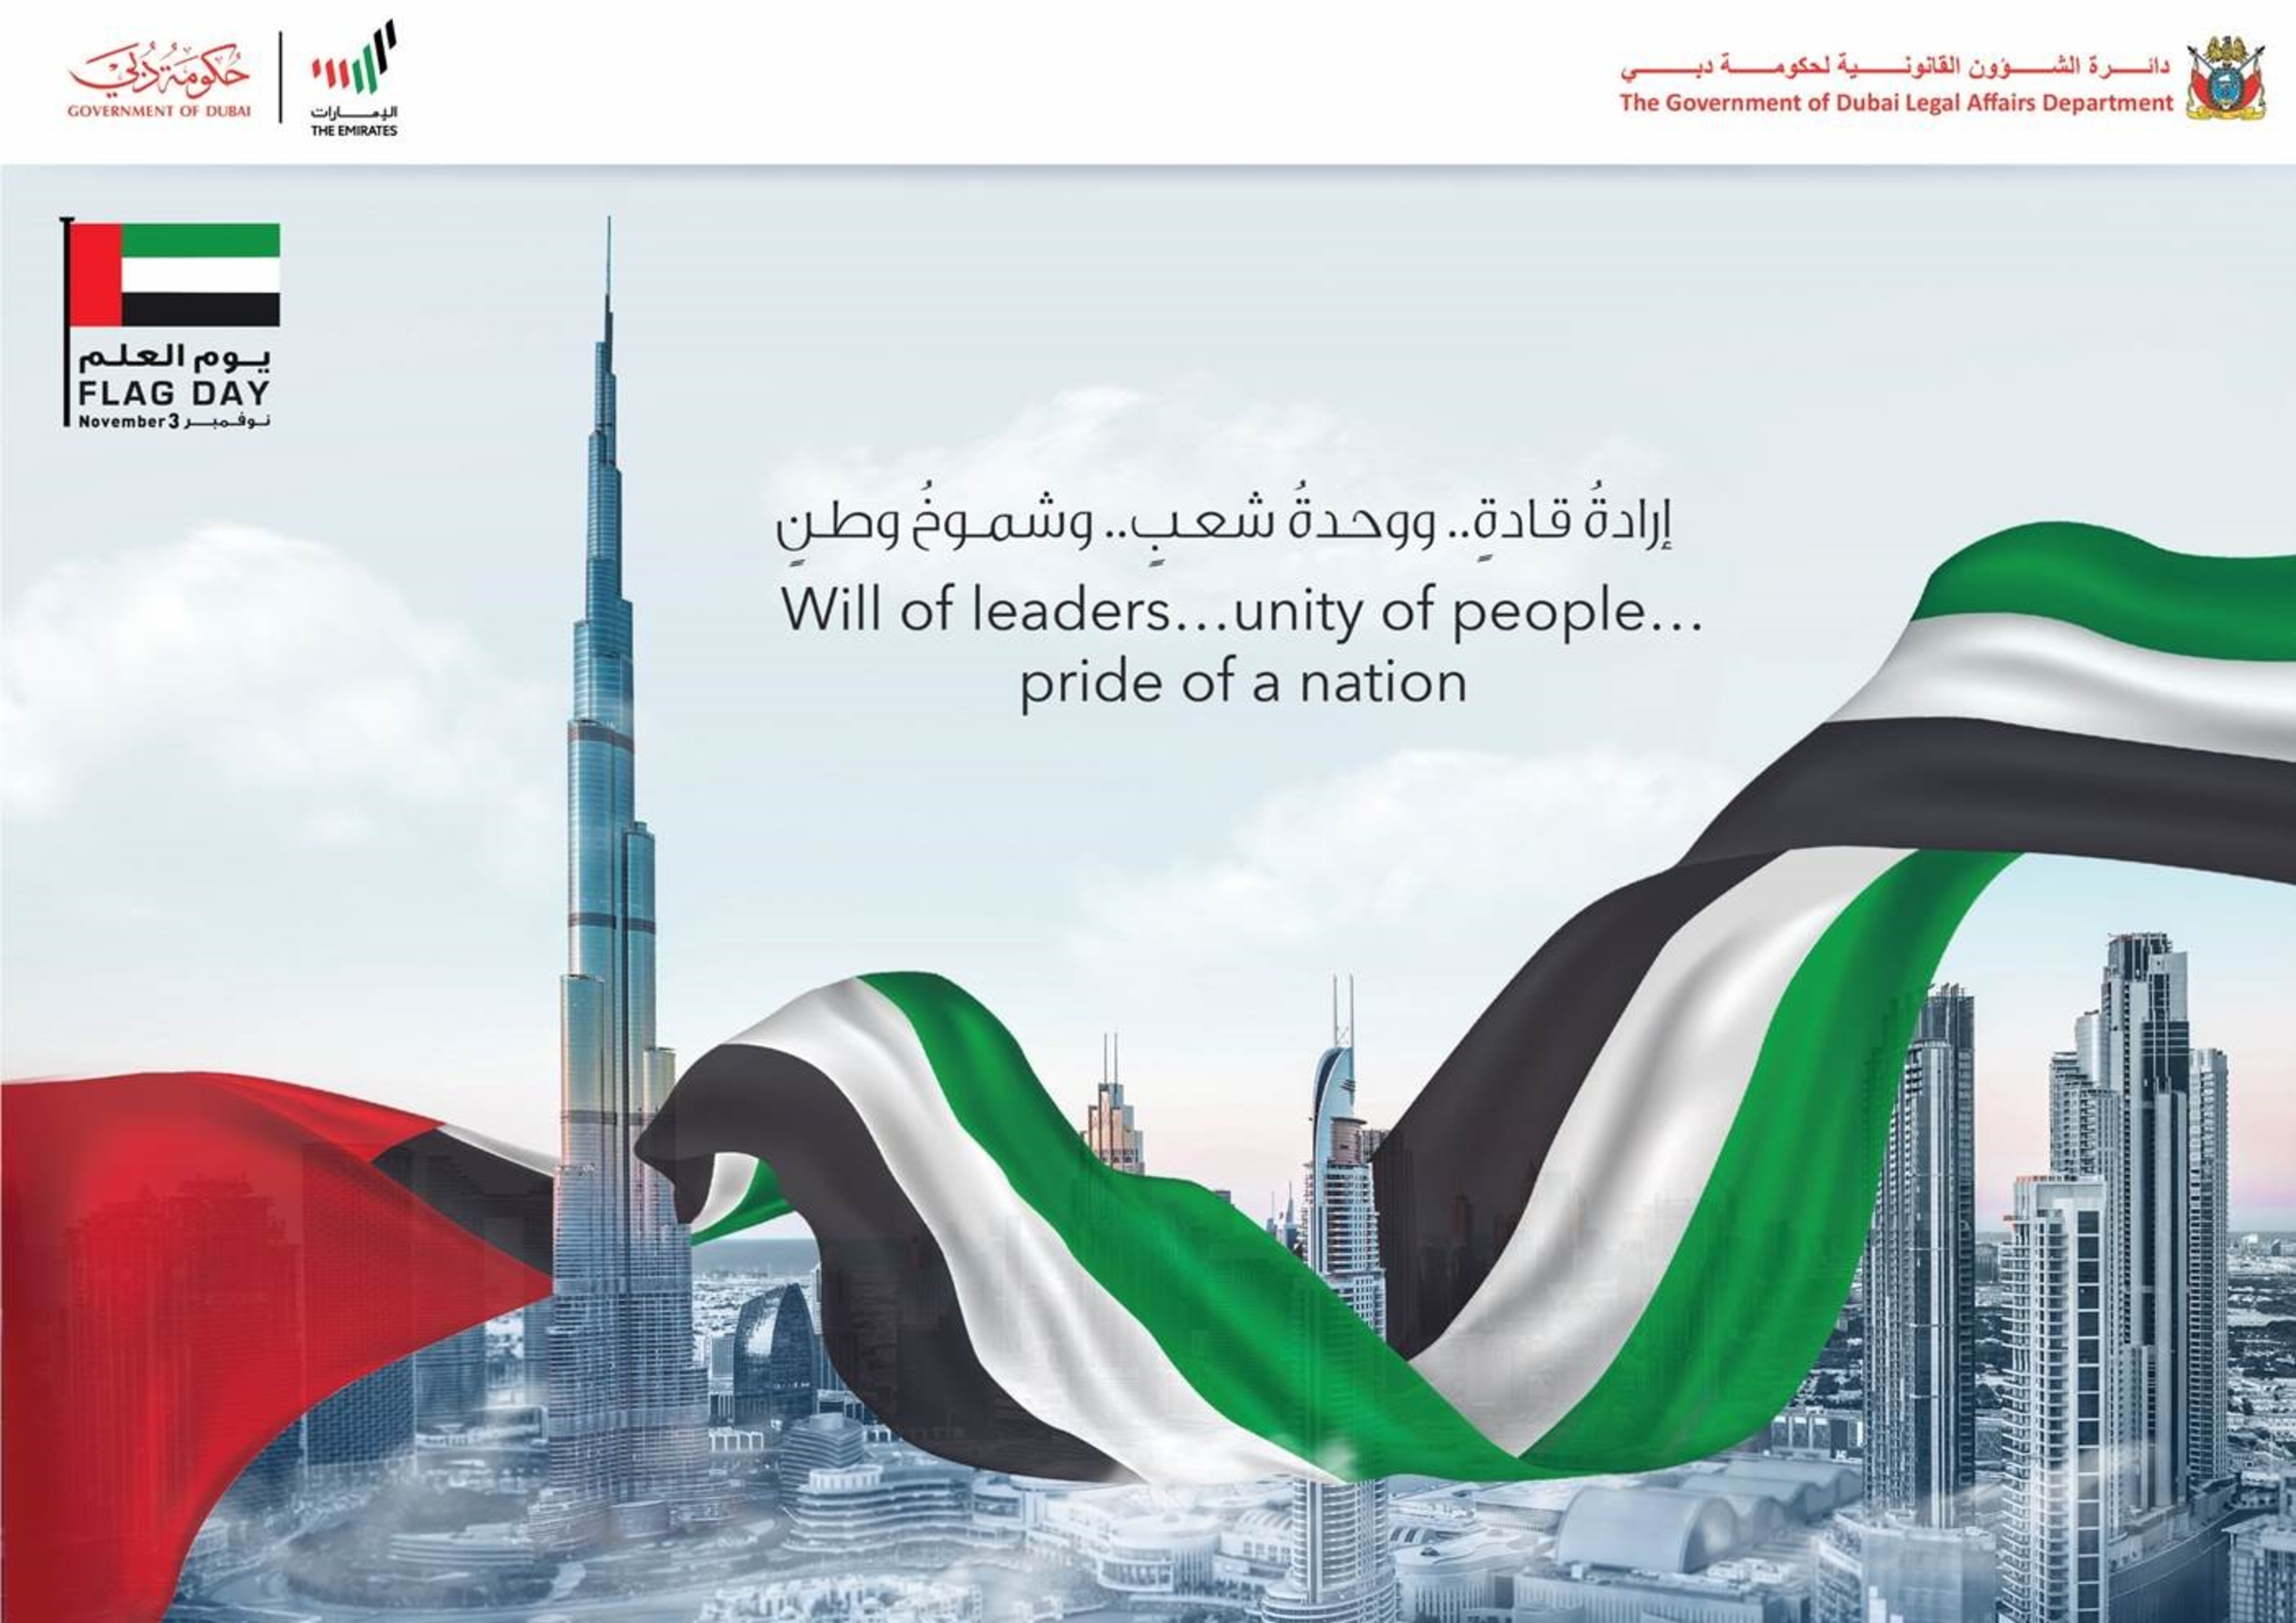 تصريح سعادة مدير عام دائرة الشؤون القانونية لحكومة دبي بمناسبة يوم العلم 